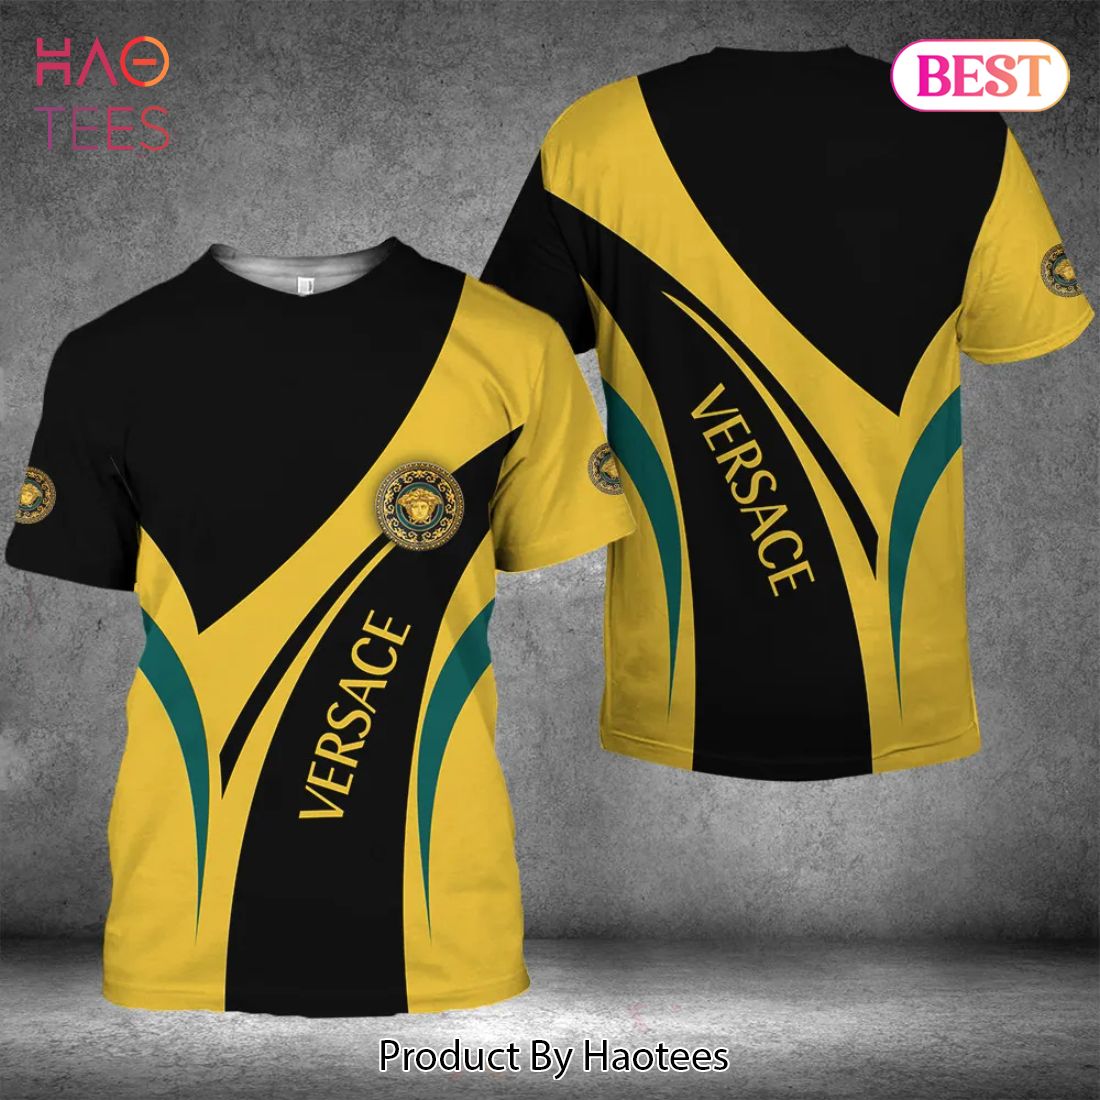 NEW FASHION] Versace Black Yellow Luxury Brand Premium T-Shirt